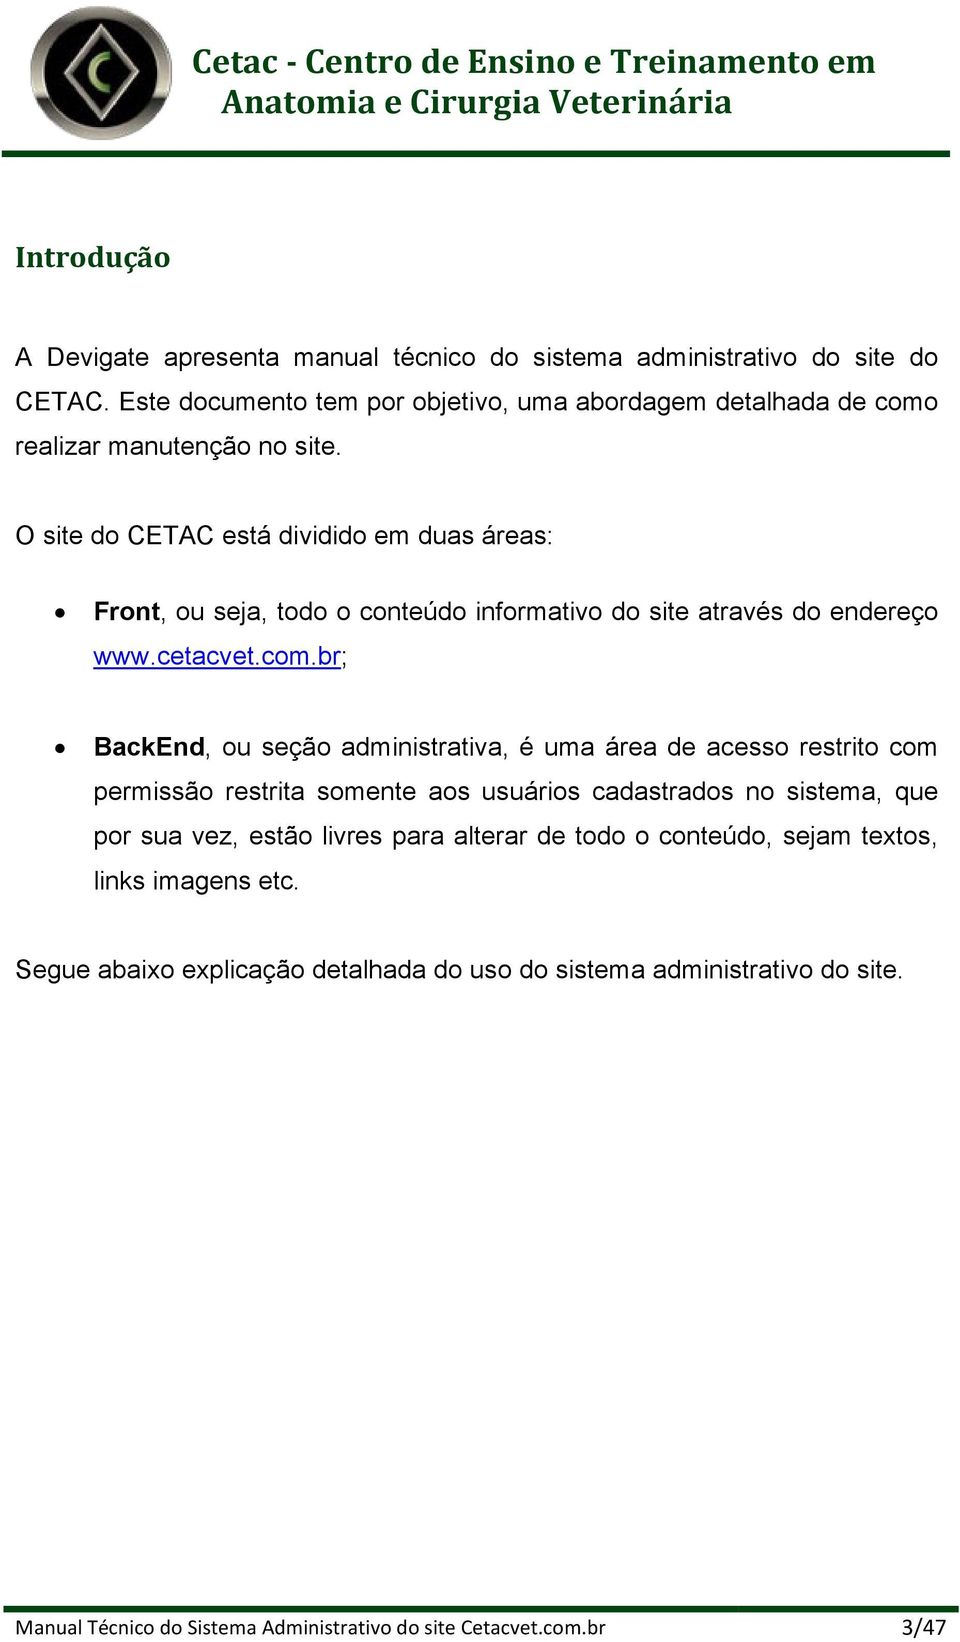 O site do CETAC está dividido em duas áreas: Front, ou seja, todo o conteúdo informativo do site através do endereço www.cetacvet.com.